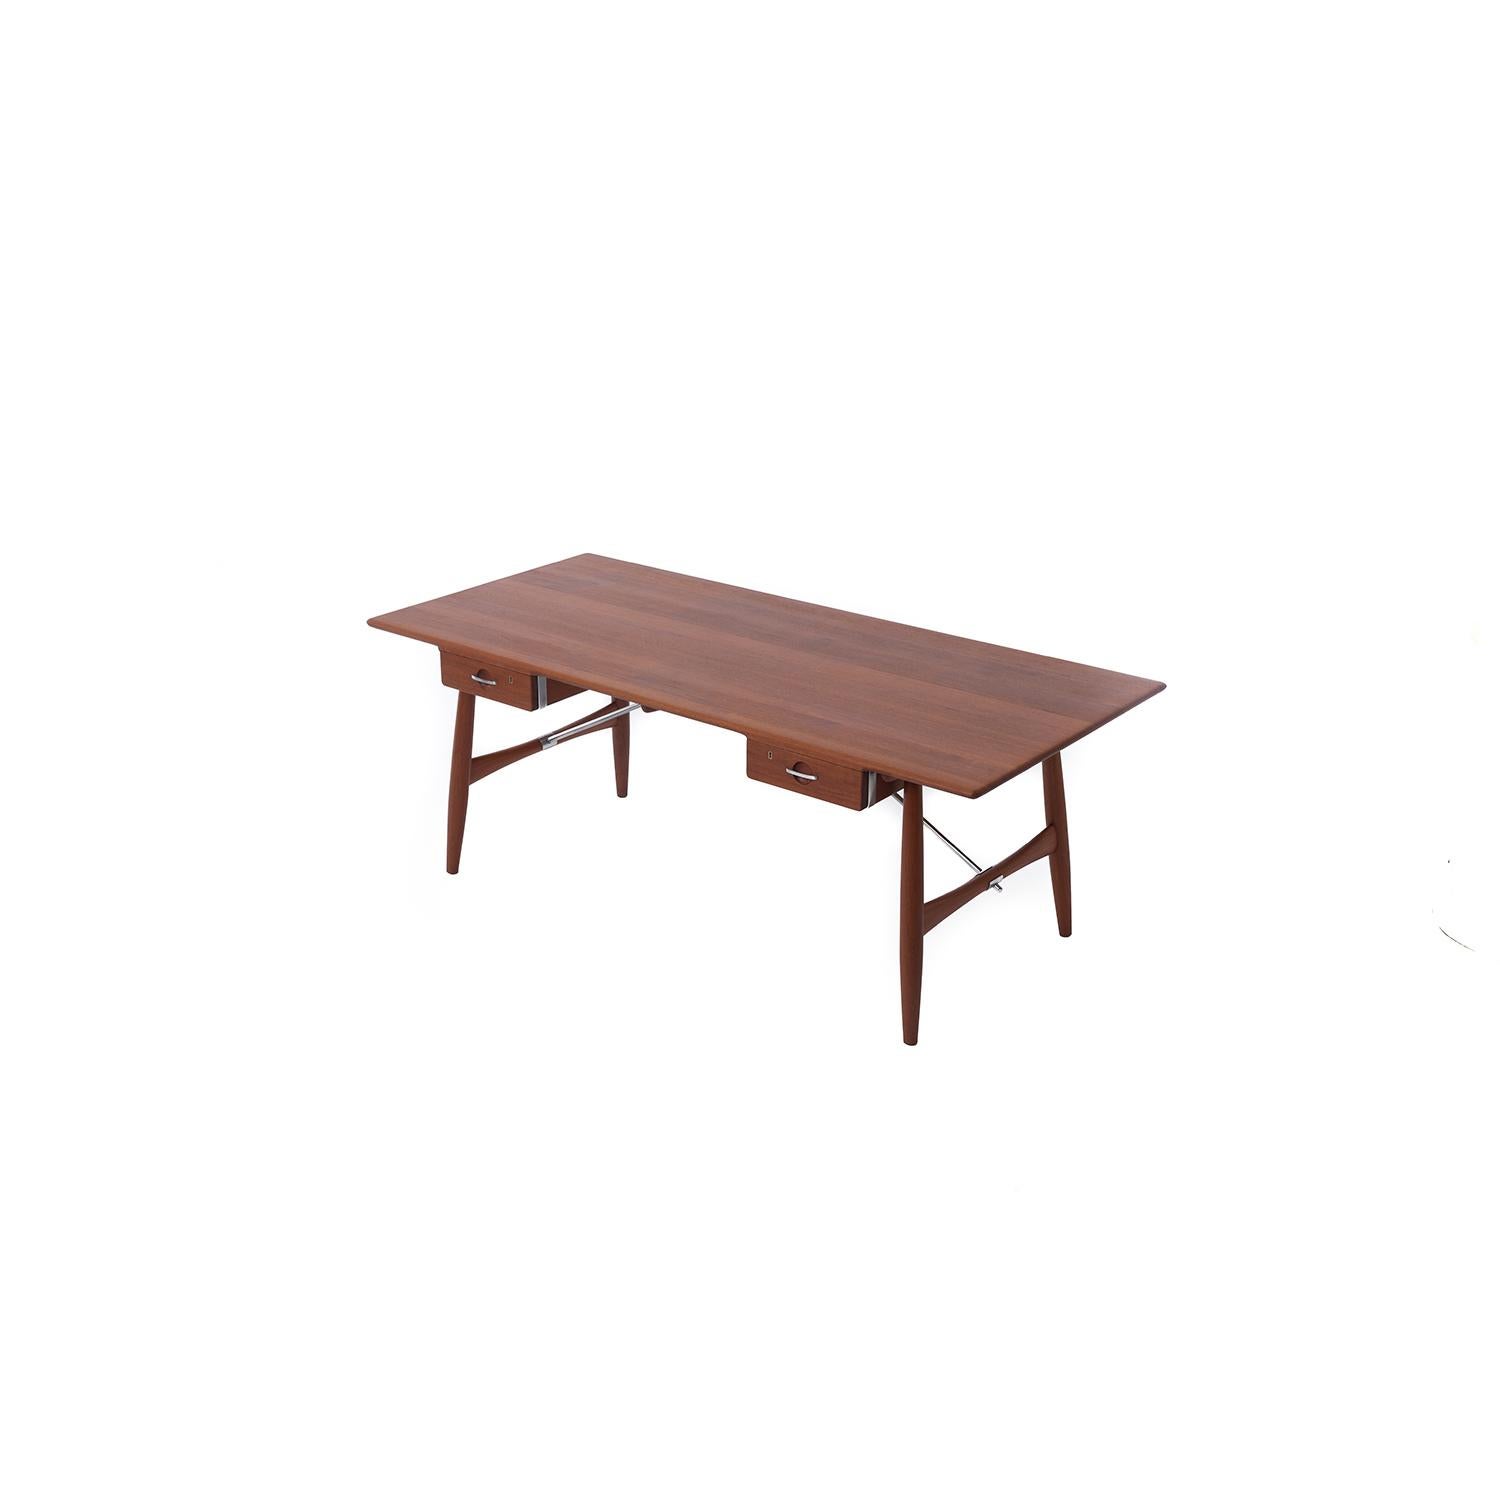 Scandinavian Modern Hans J Wegner Solid Teak Architect's Desk Model 571 For Sale